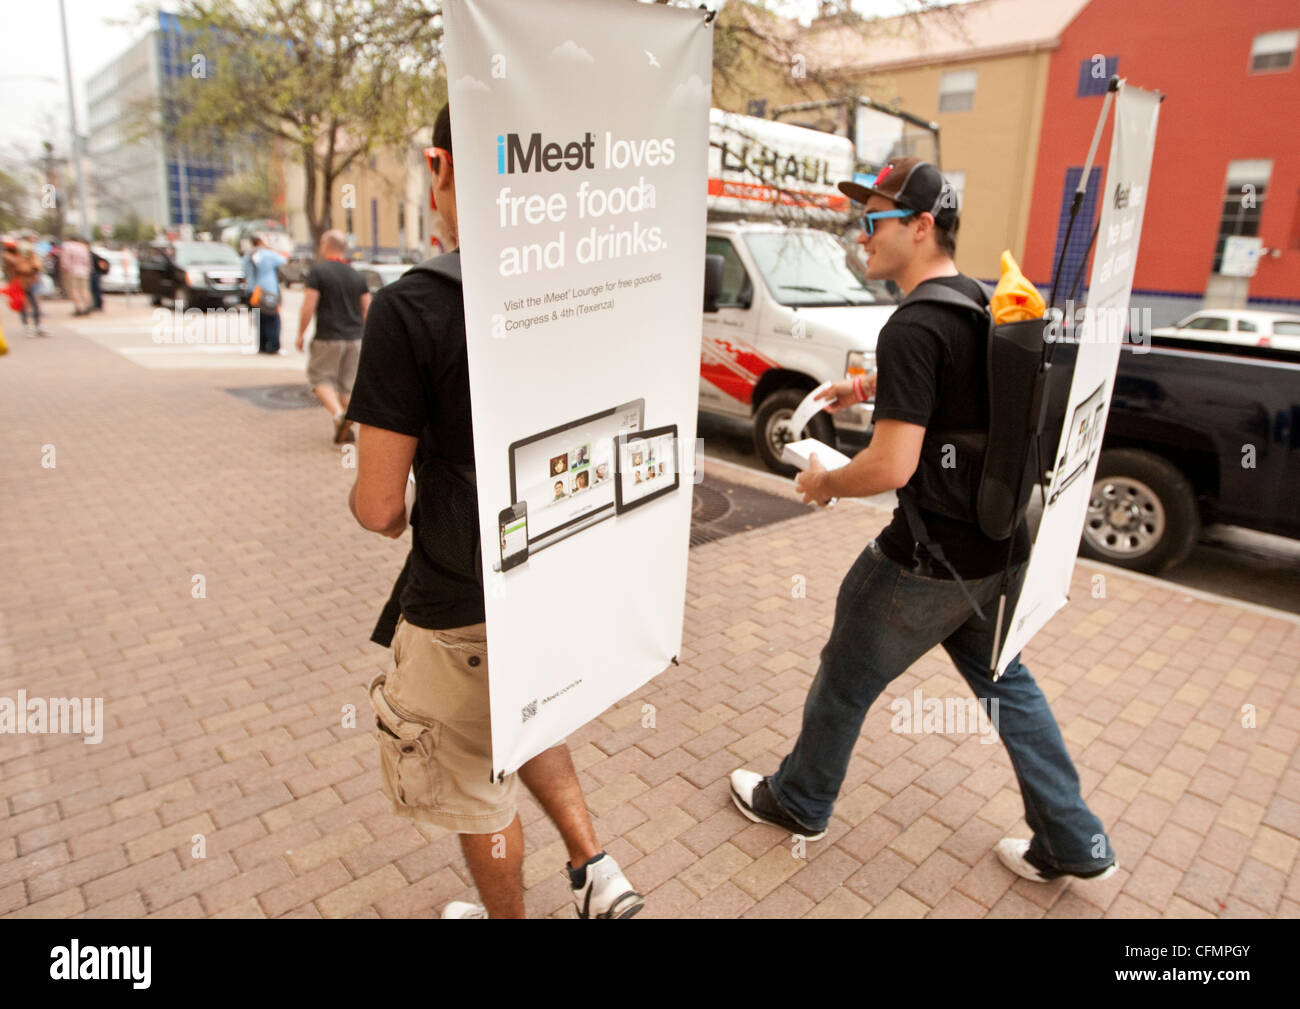 SXSW Interactive convención atrae a miles. Las empresas utilizan diversos métodos de marketing para atraer clientes walking billboard Foto de stock